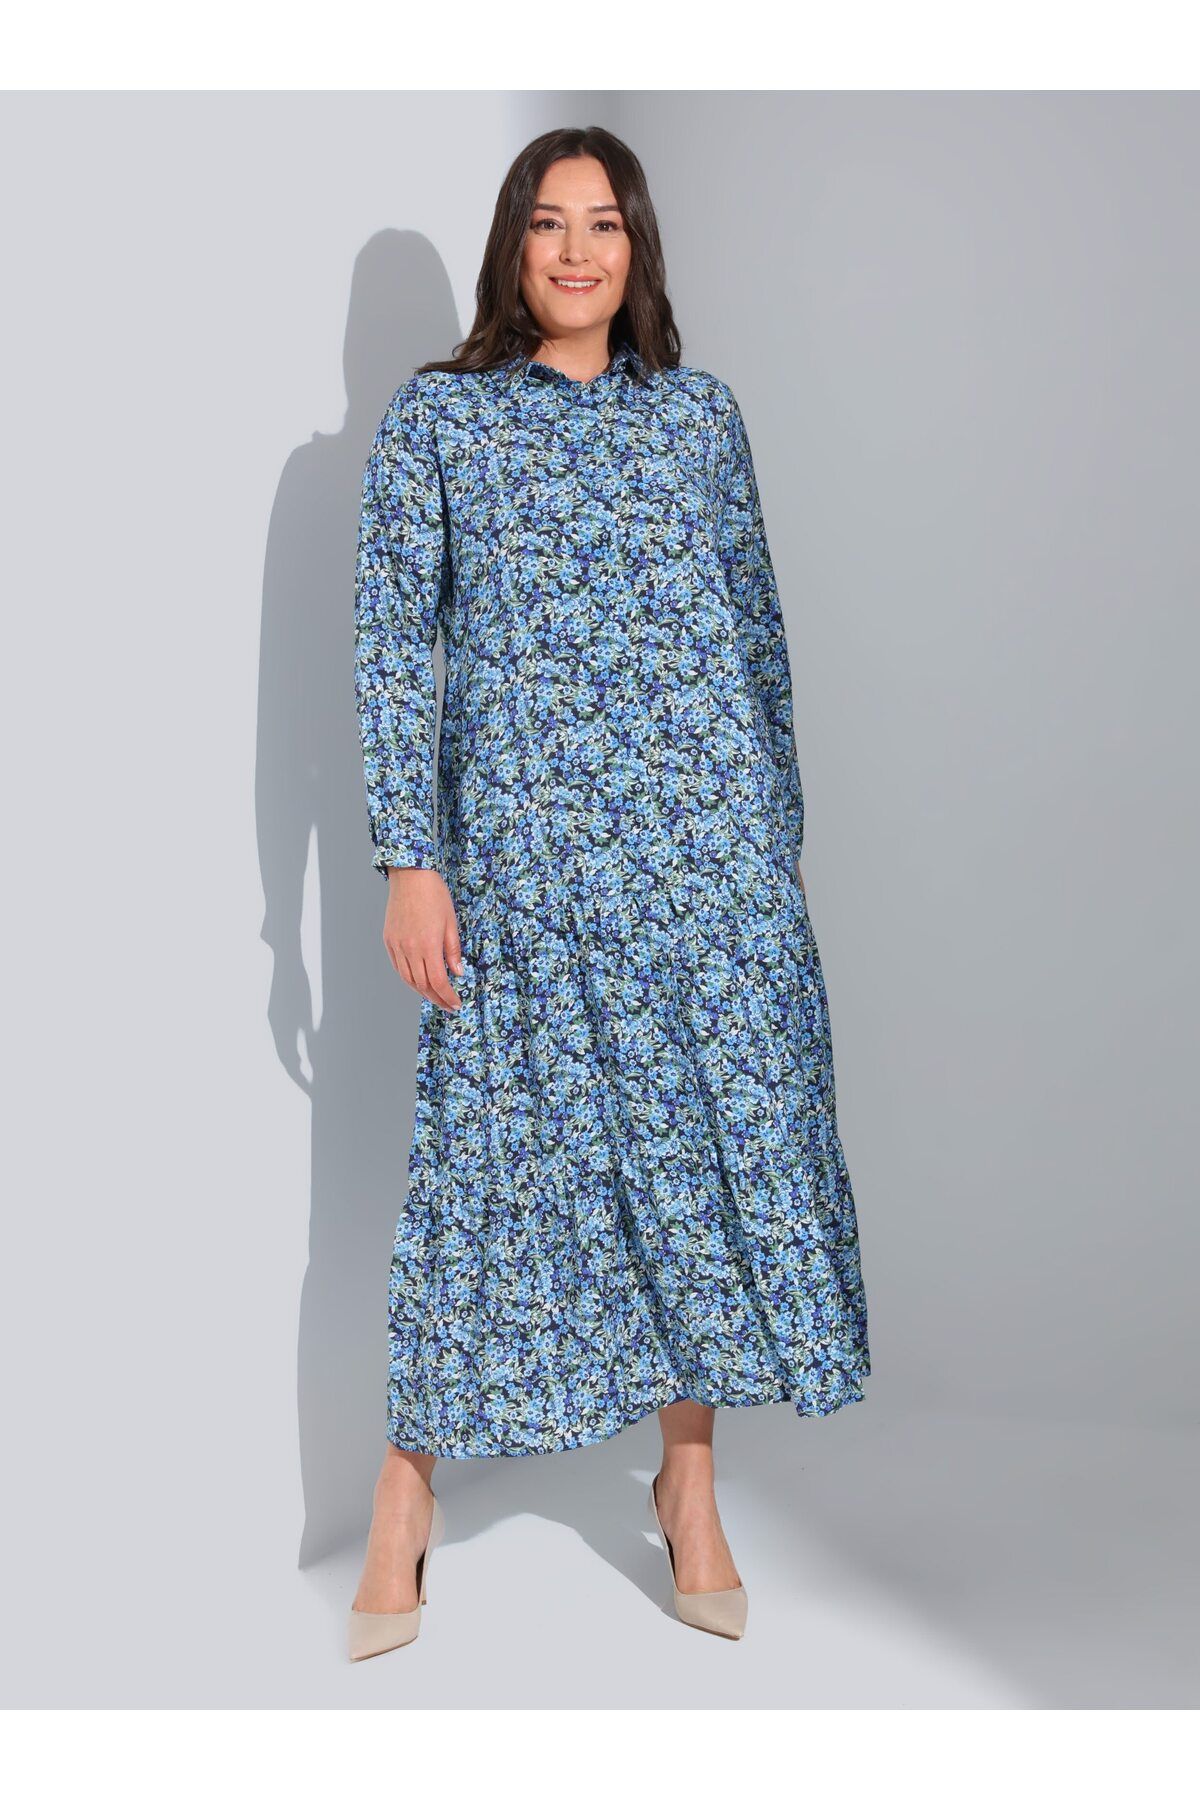 Alia Doğal Kumaşlı Büyük Beden Çiçek Desenli Elbise - Mavi - Alia